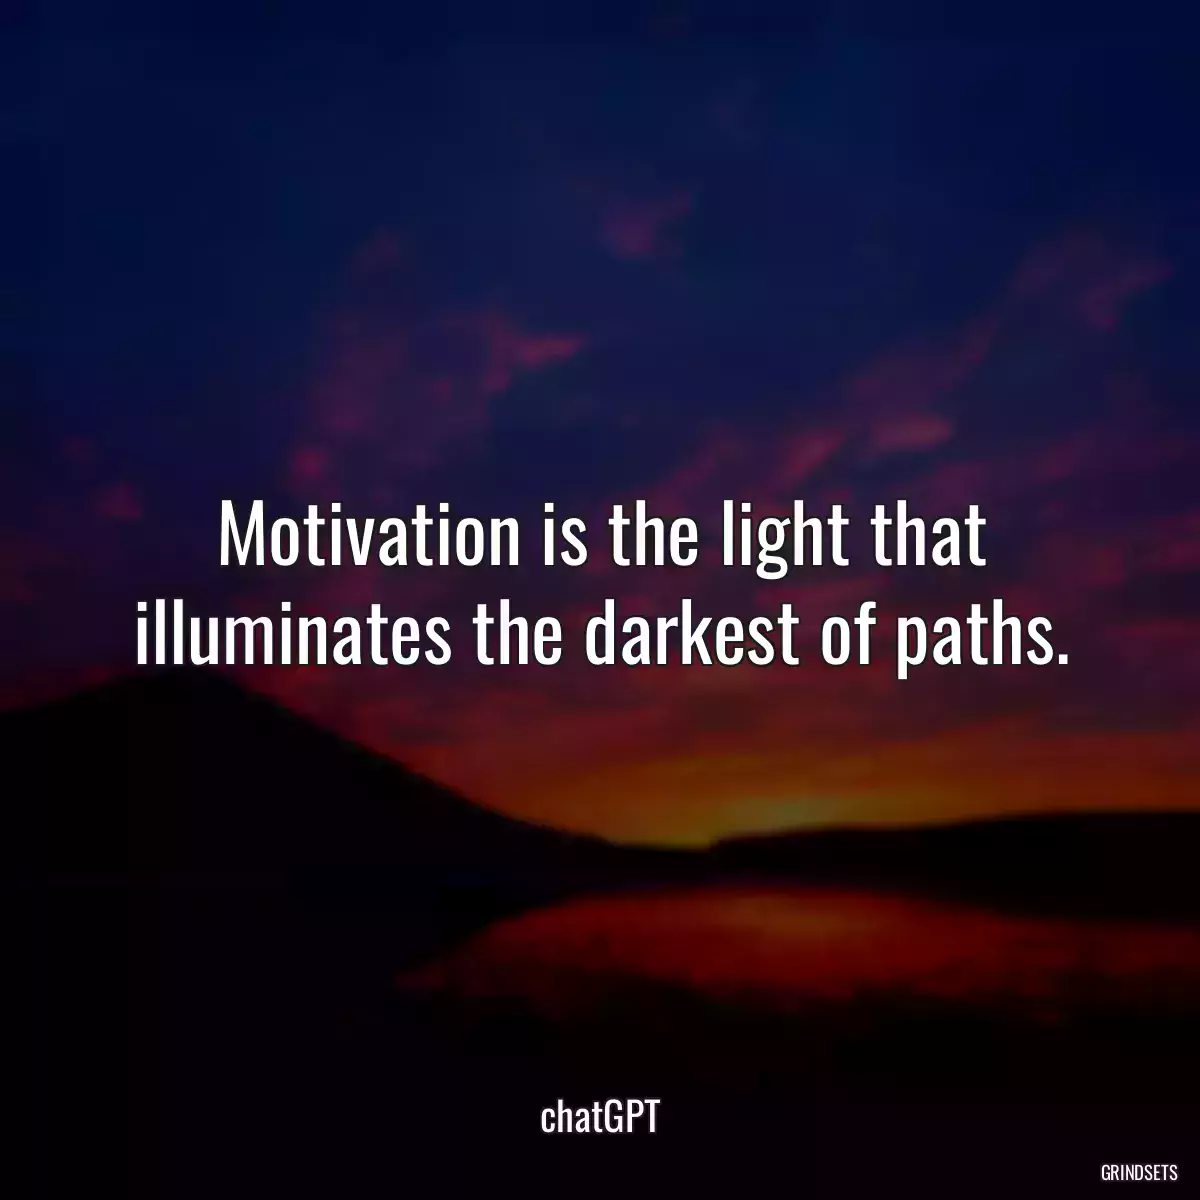 Motivation is the light that illuminates the darkest of paths.